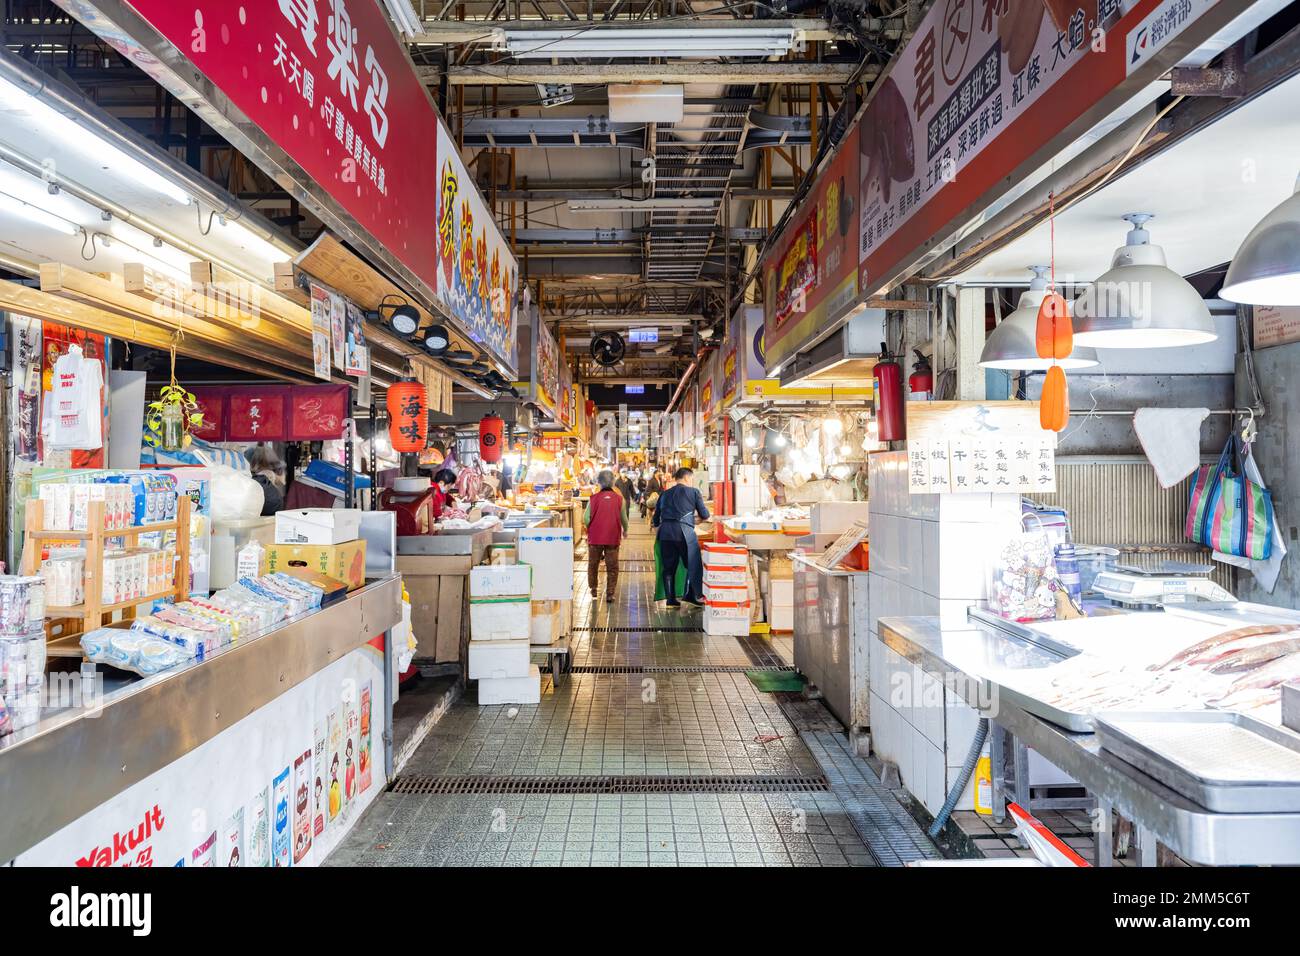 Tainan, JAN 5 2023 - Interior view of the Shuixian Gong Market Stock Photo